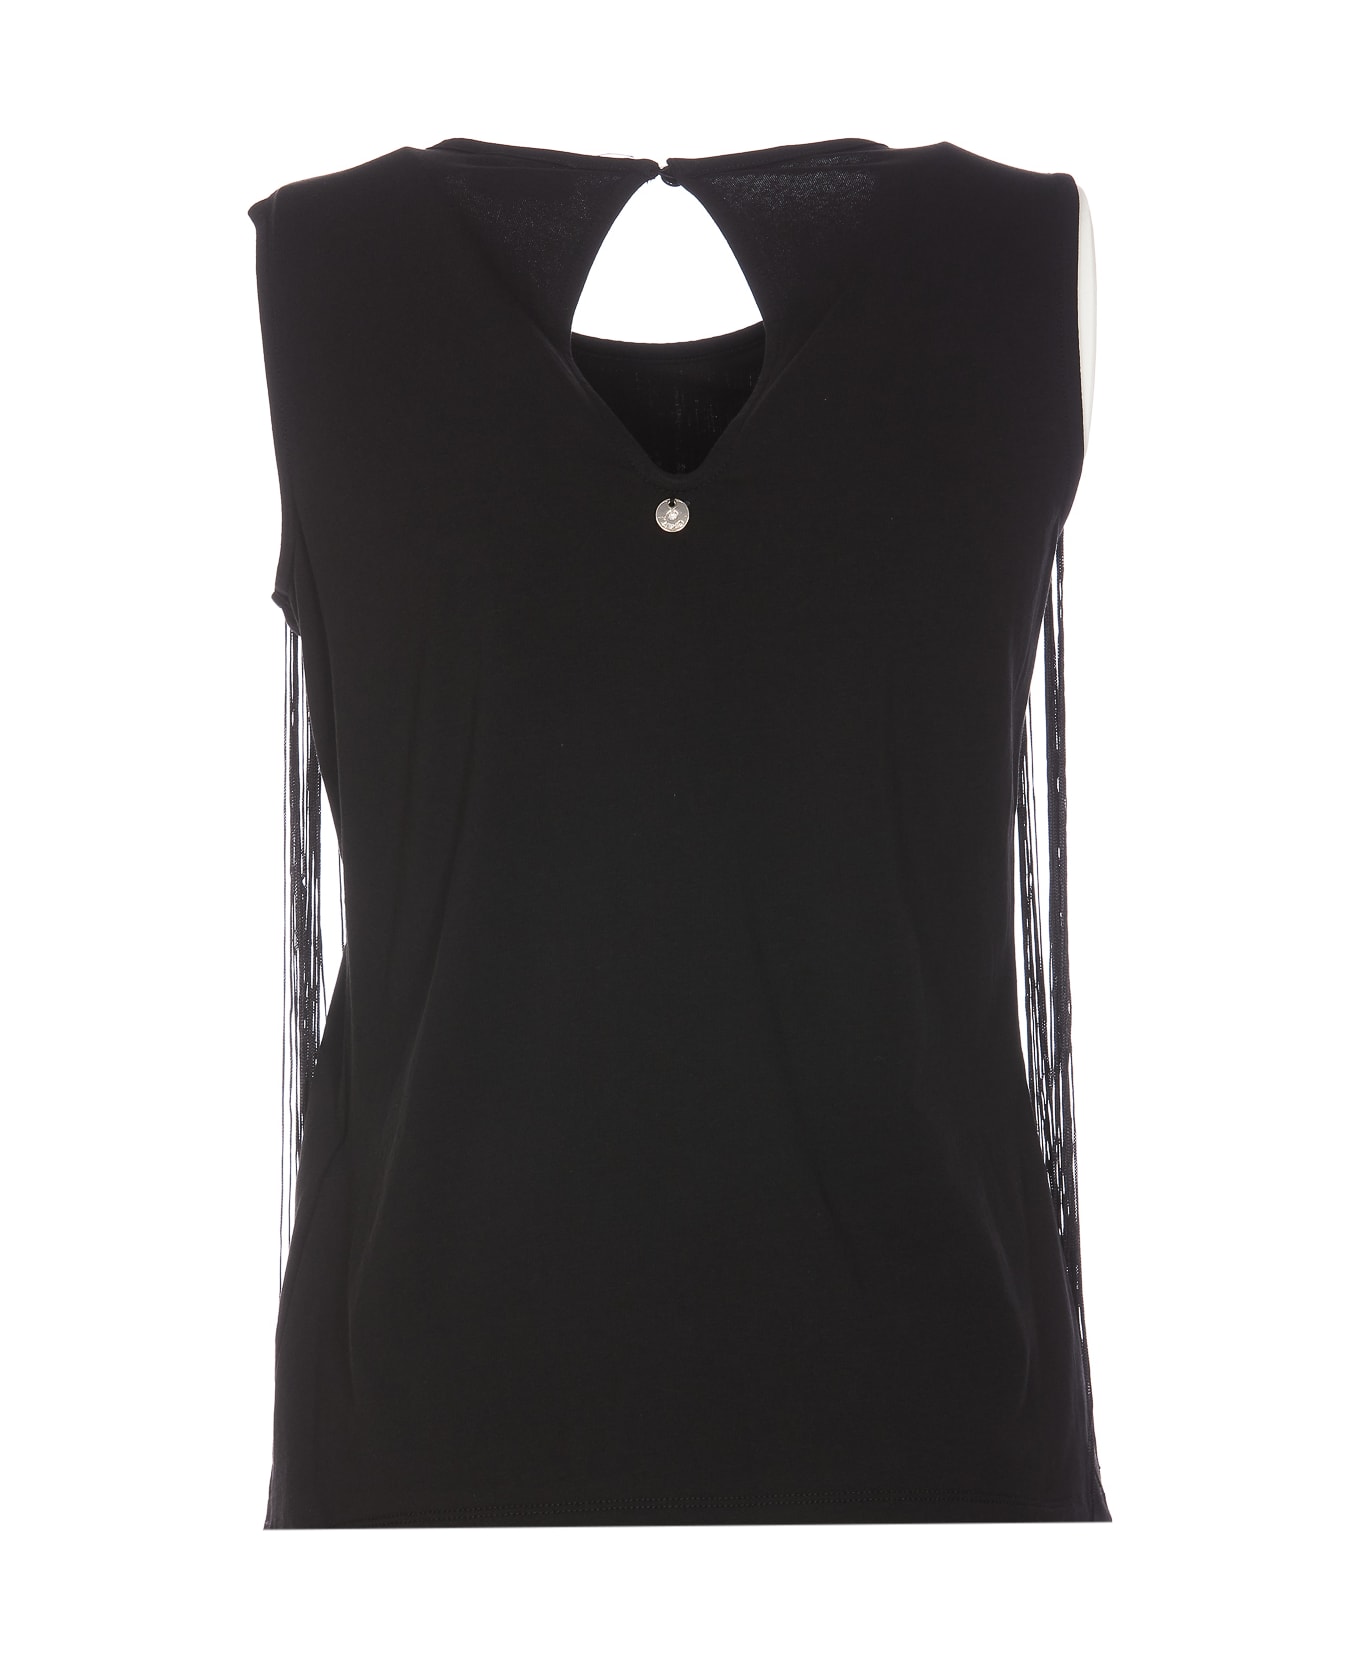 Liu-Jo Frangine Top - Black Tシャツ